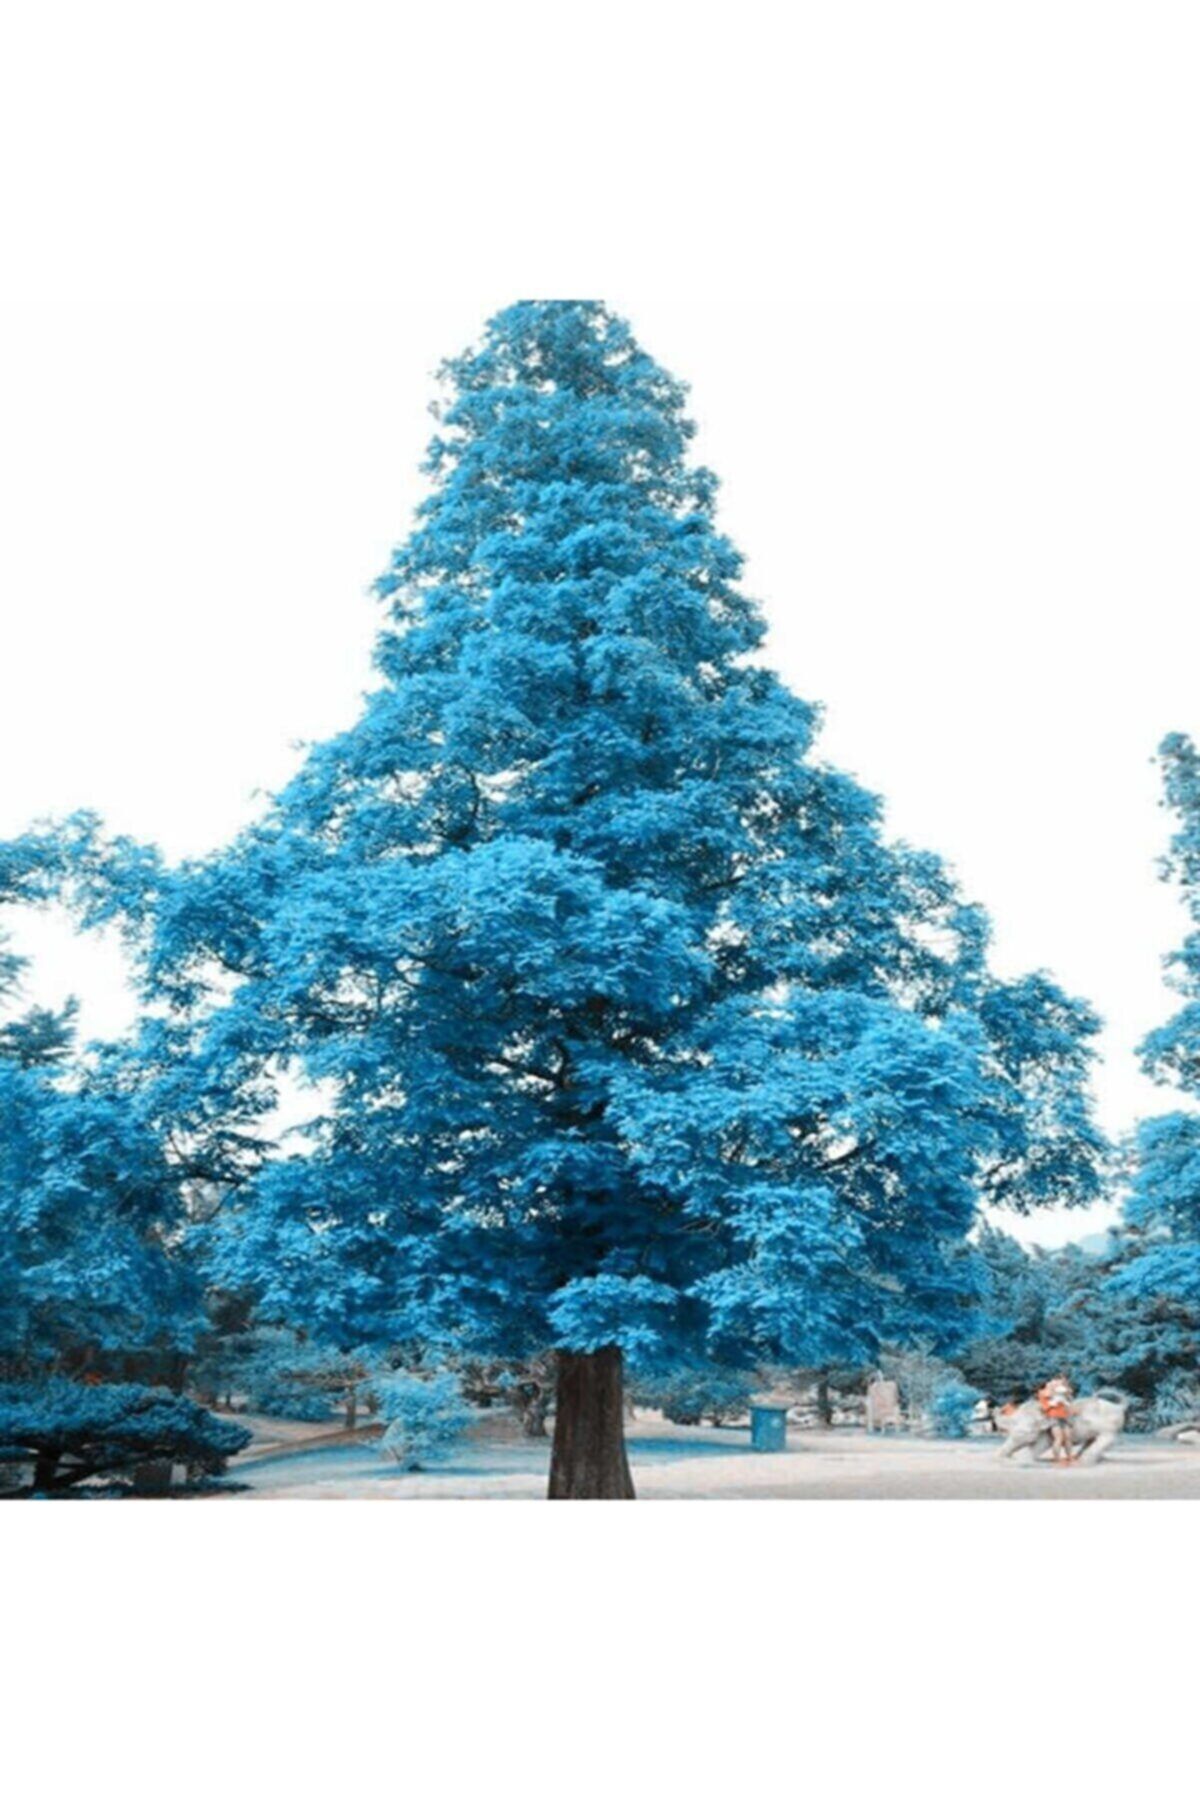 Eslem Tohumculuk Nadir Mavi Ladin Ağaç Tohumu Mavi Ladin Ağacı Tohumu 10 Adet Tohum